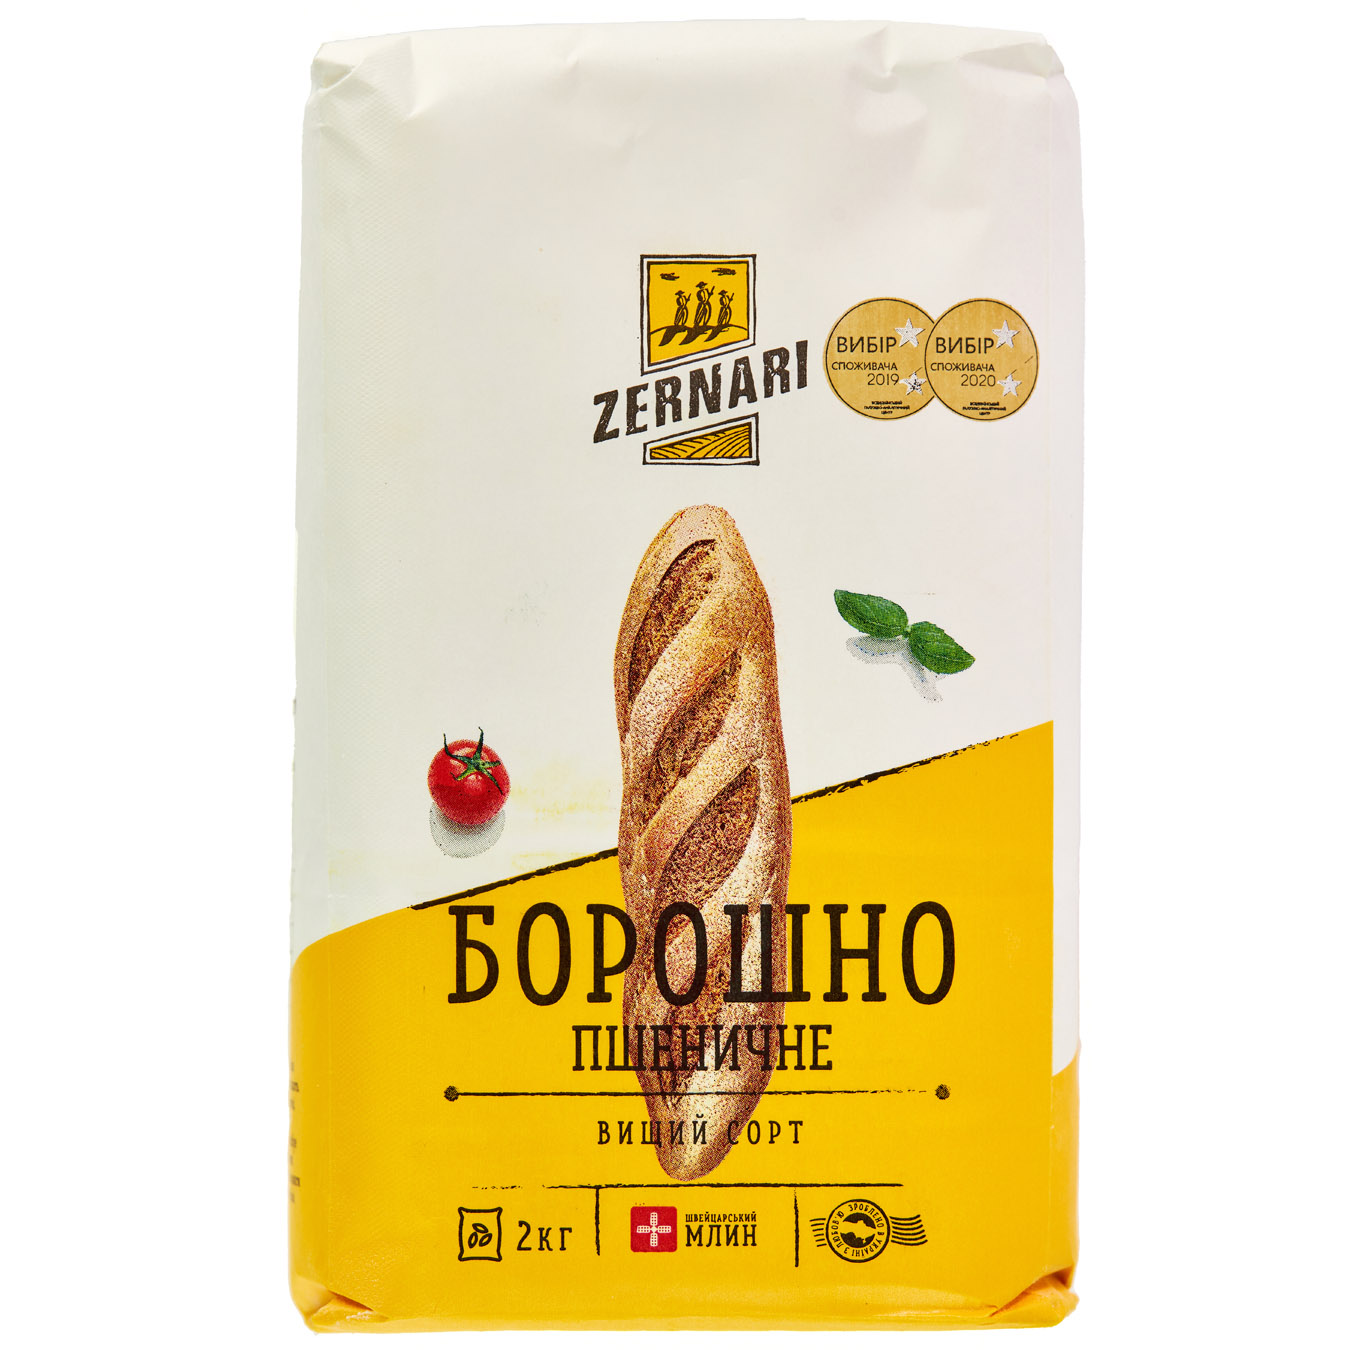 Zernari wheat flour highest grade 2kg